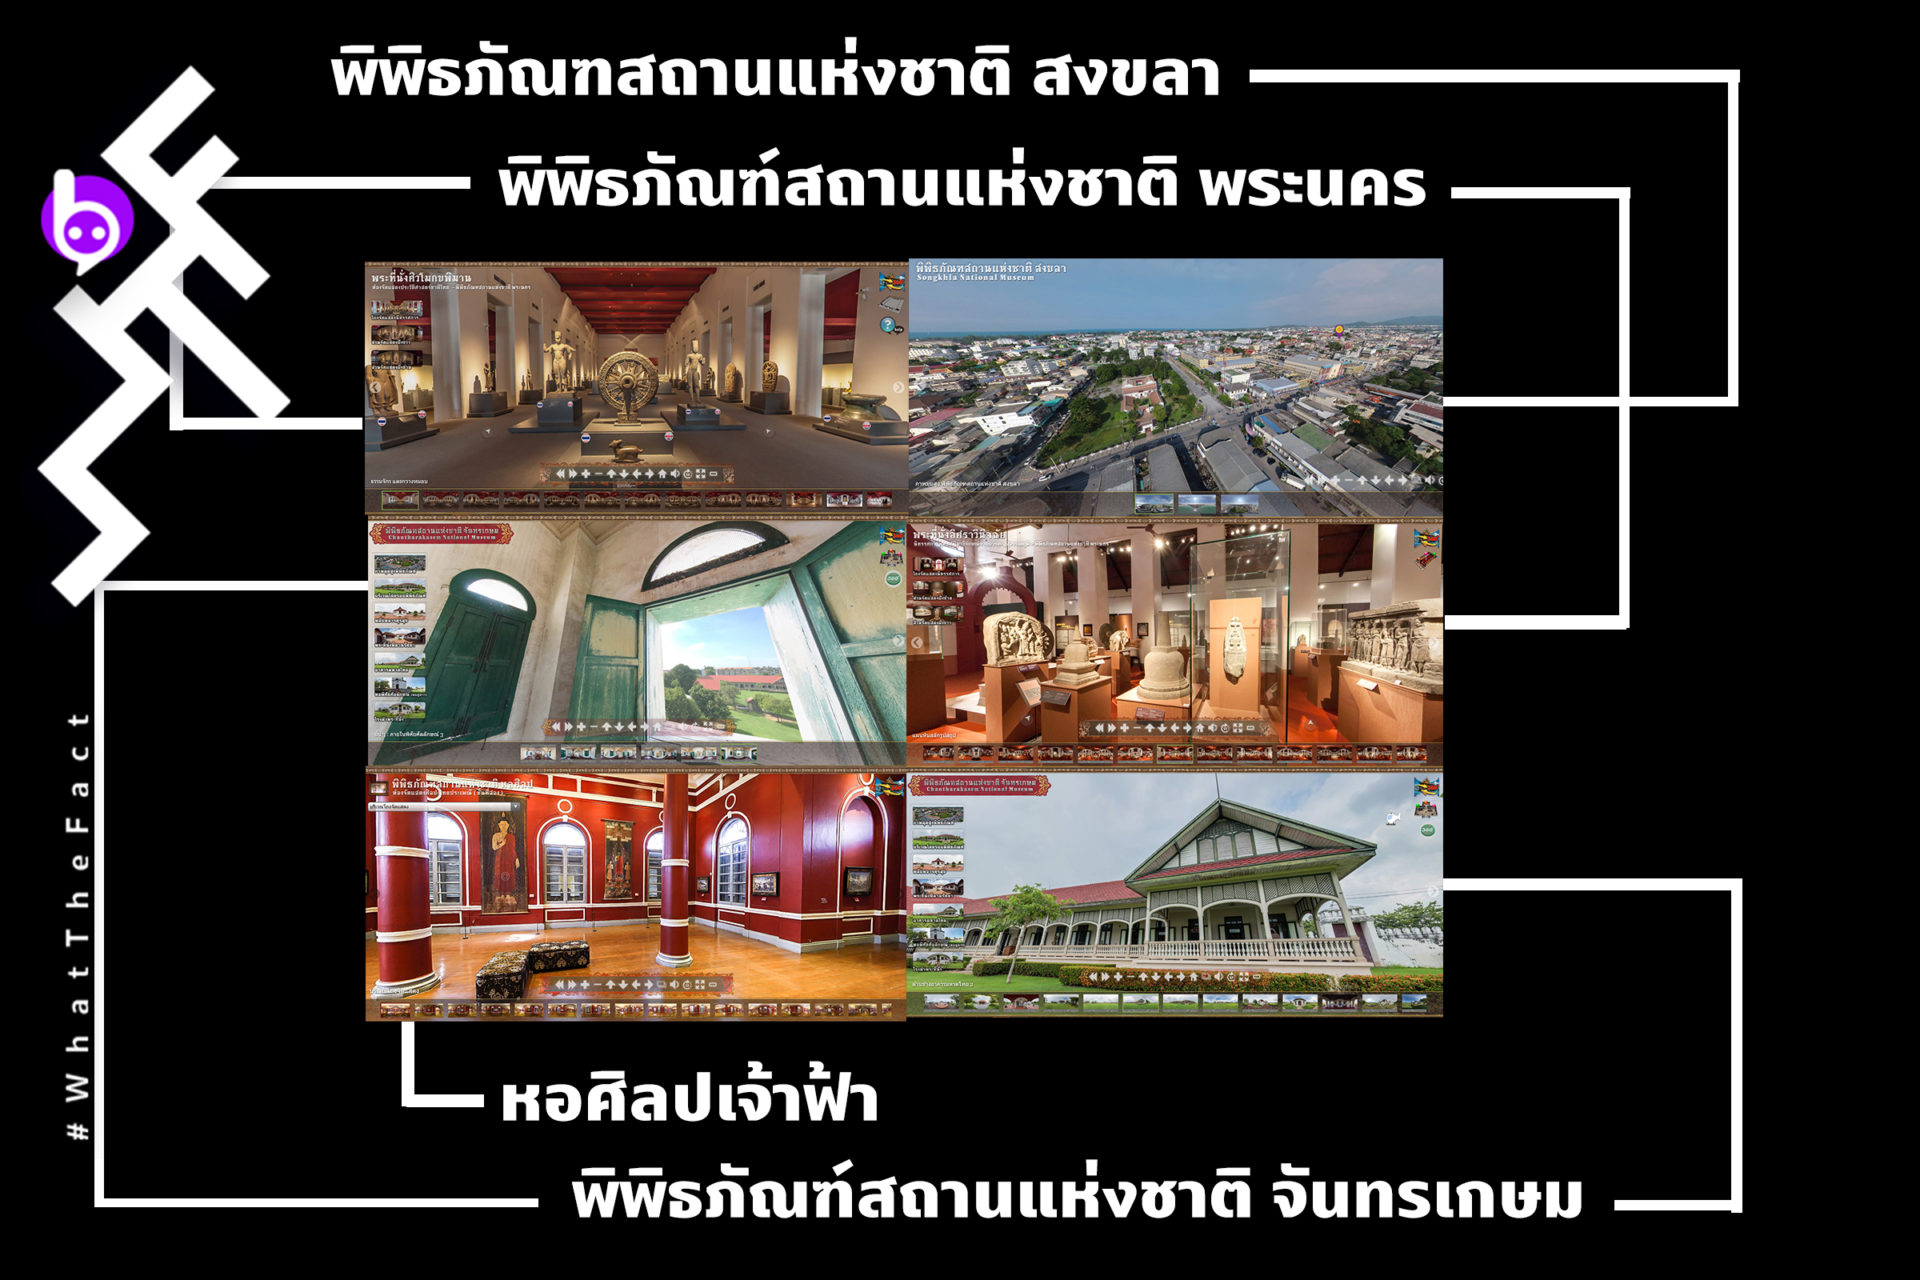 มาแล้วจ้าาา เที่ยวไทยด้วยระบบ VR Tour เยือน  8 พิพิธภัณฑ์เด่นสวยสง่าไม่แพ้ชาติใดในโลก